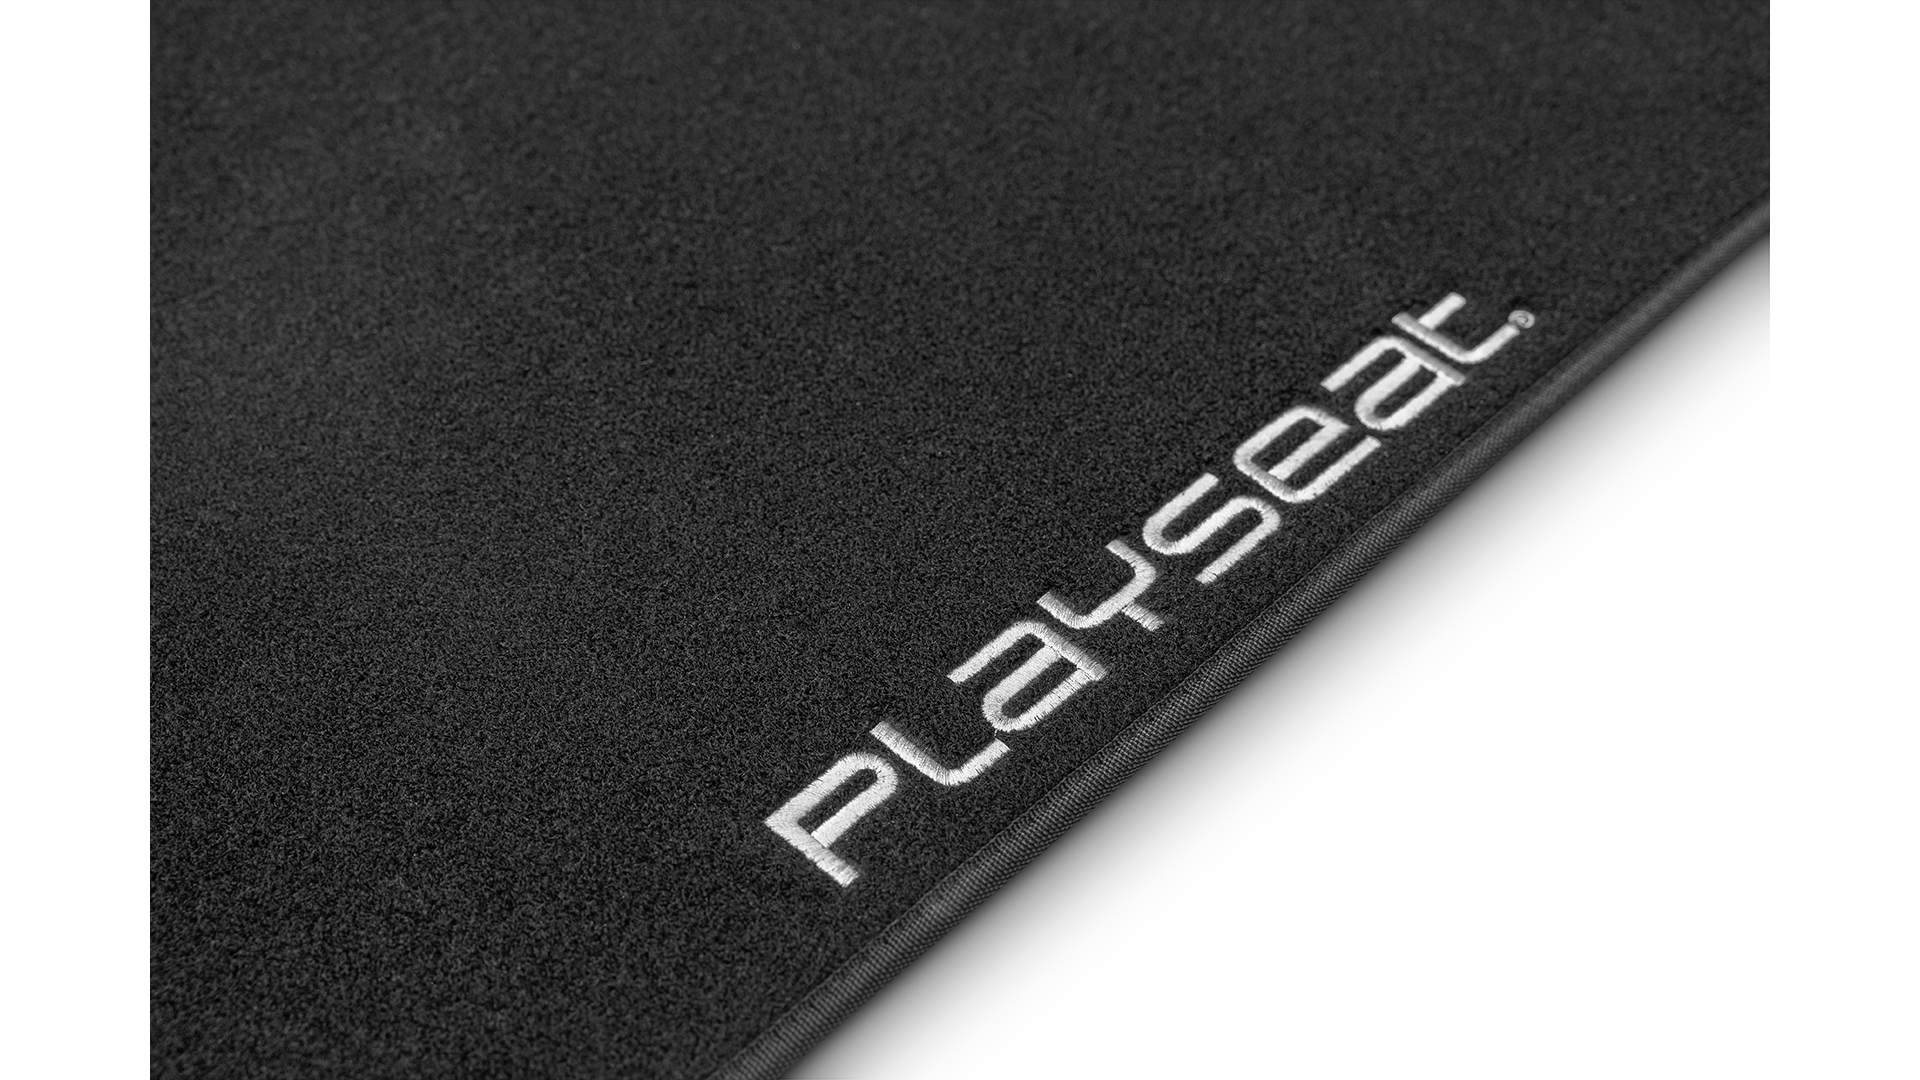 playseat-floor-mat-xl-logo-1920x1080-1.png